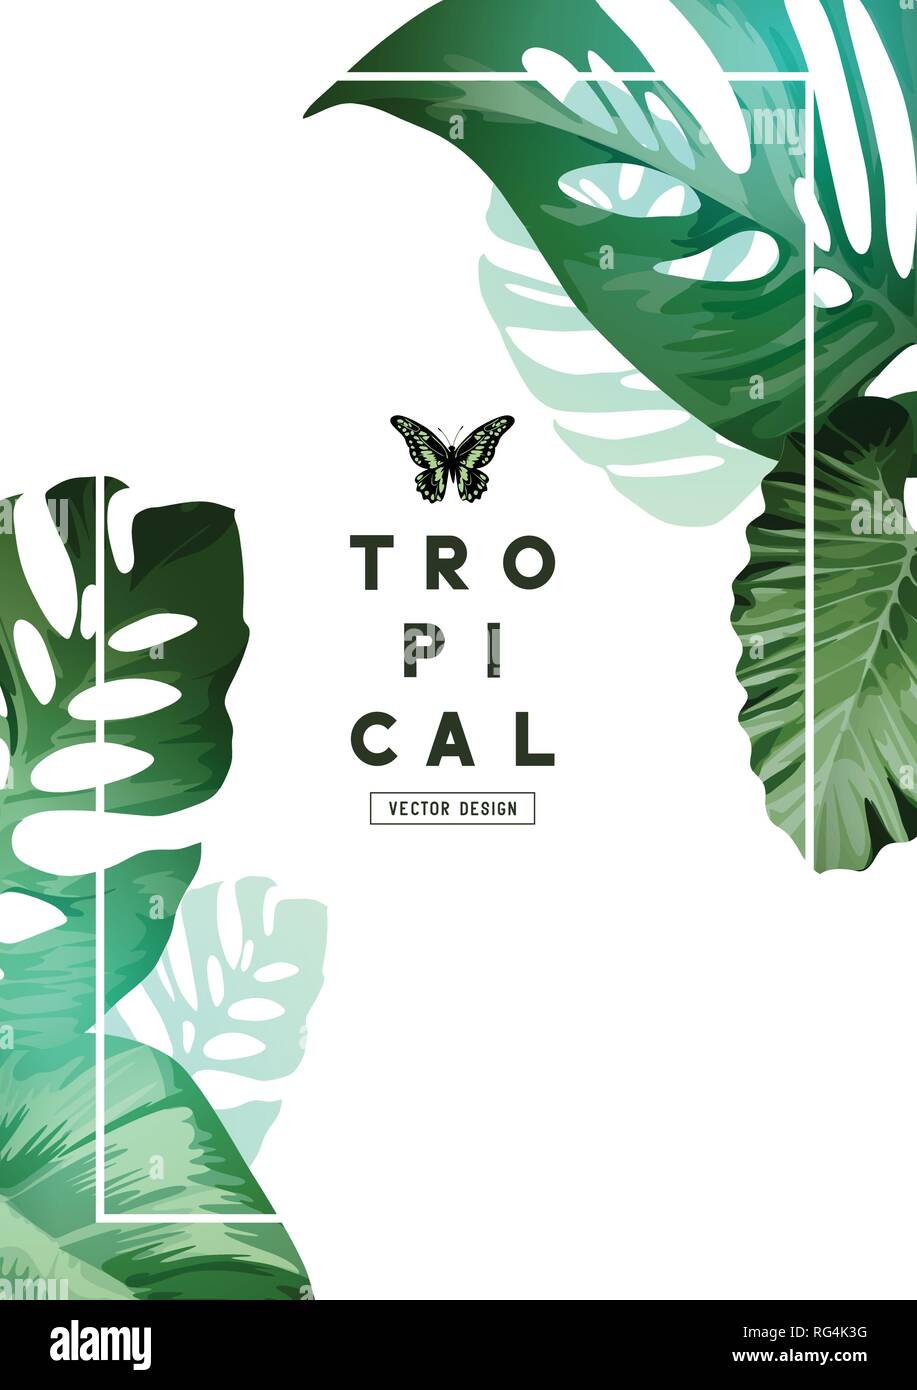 A elegant botanical Floral background frame design with palm tree leaves. Vector illustration Stock Vector